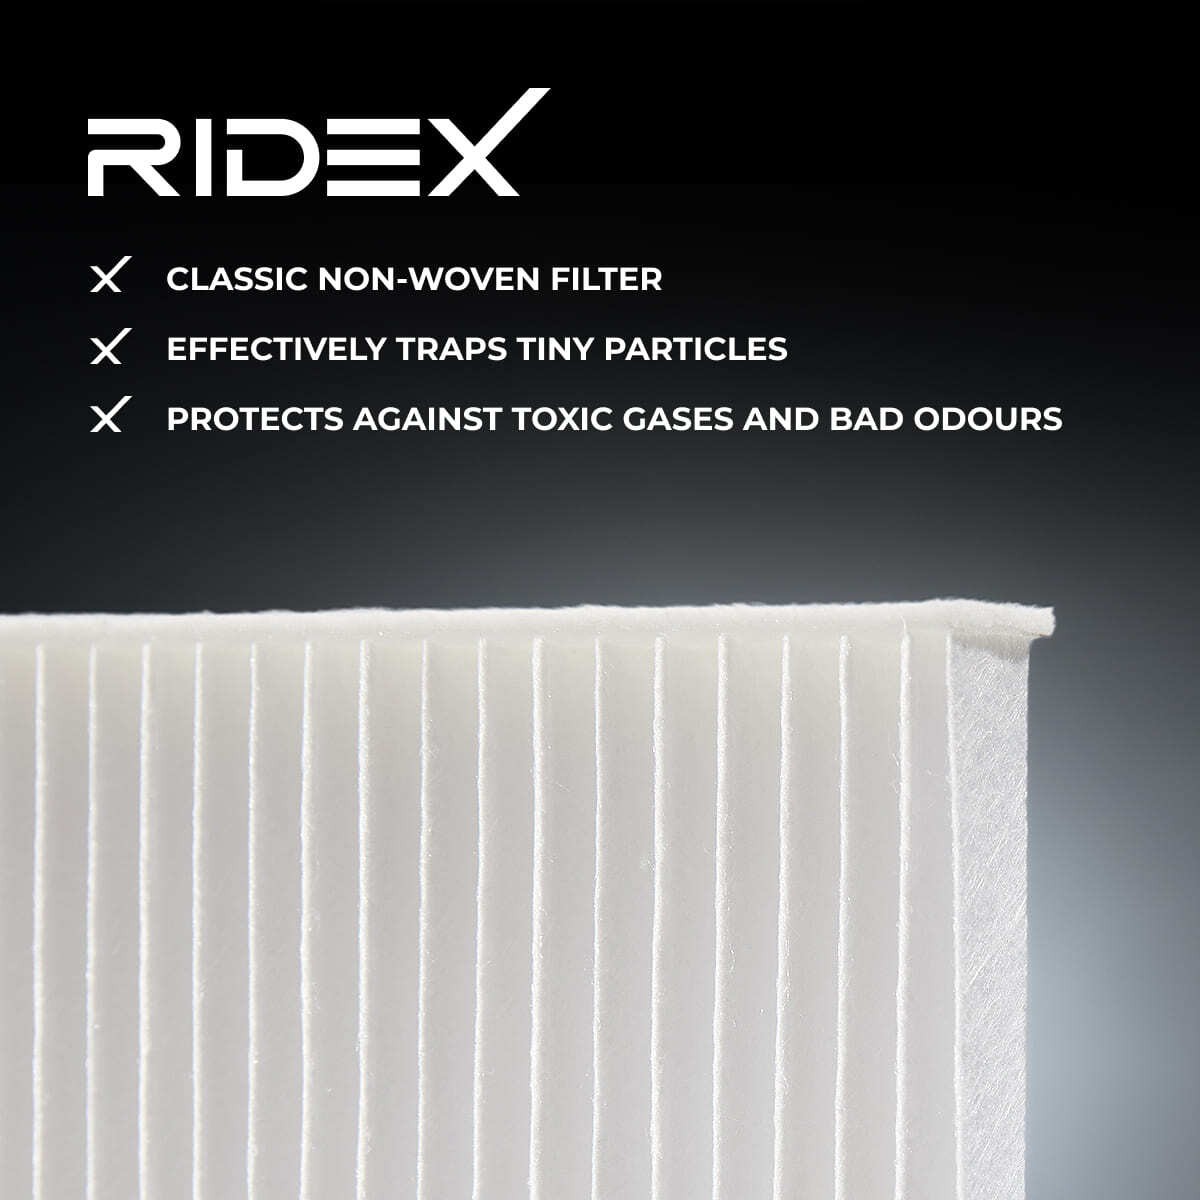 RIDEX Air conditioning filter 424I0106